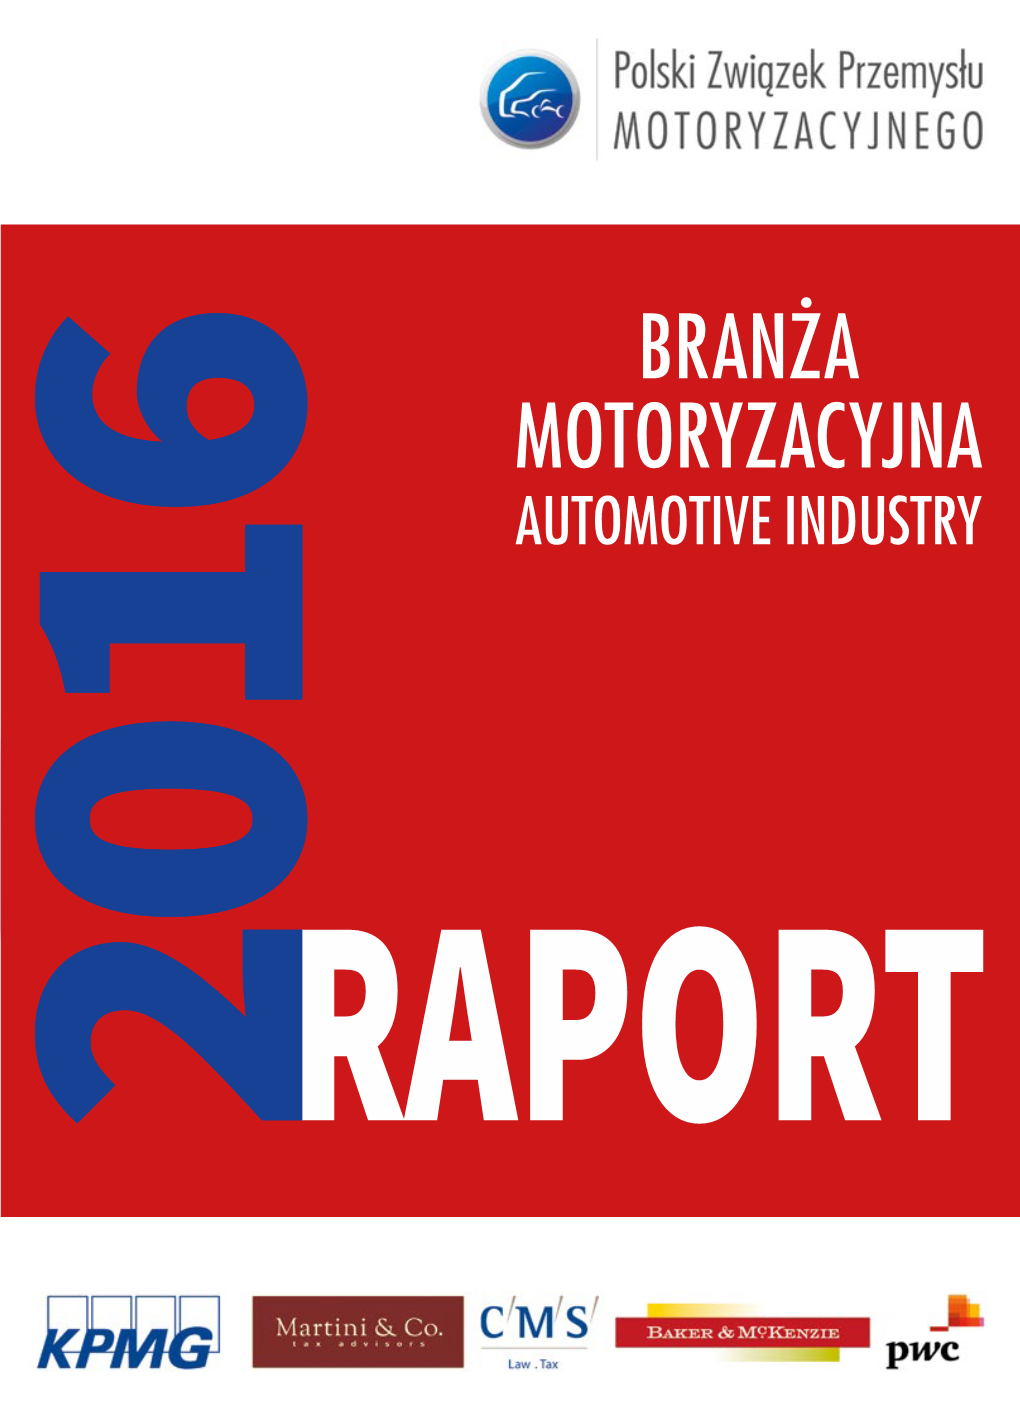 Branża Motoryzacyjna Automotive Industry 2016